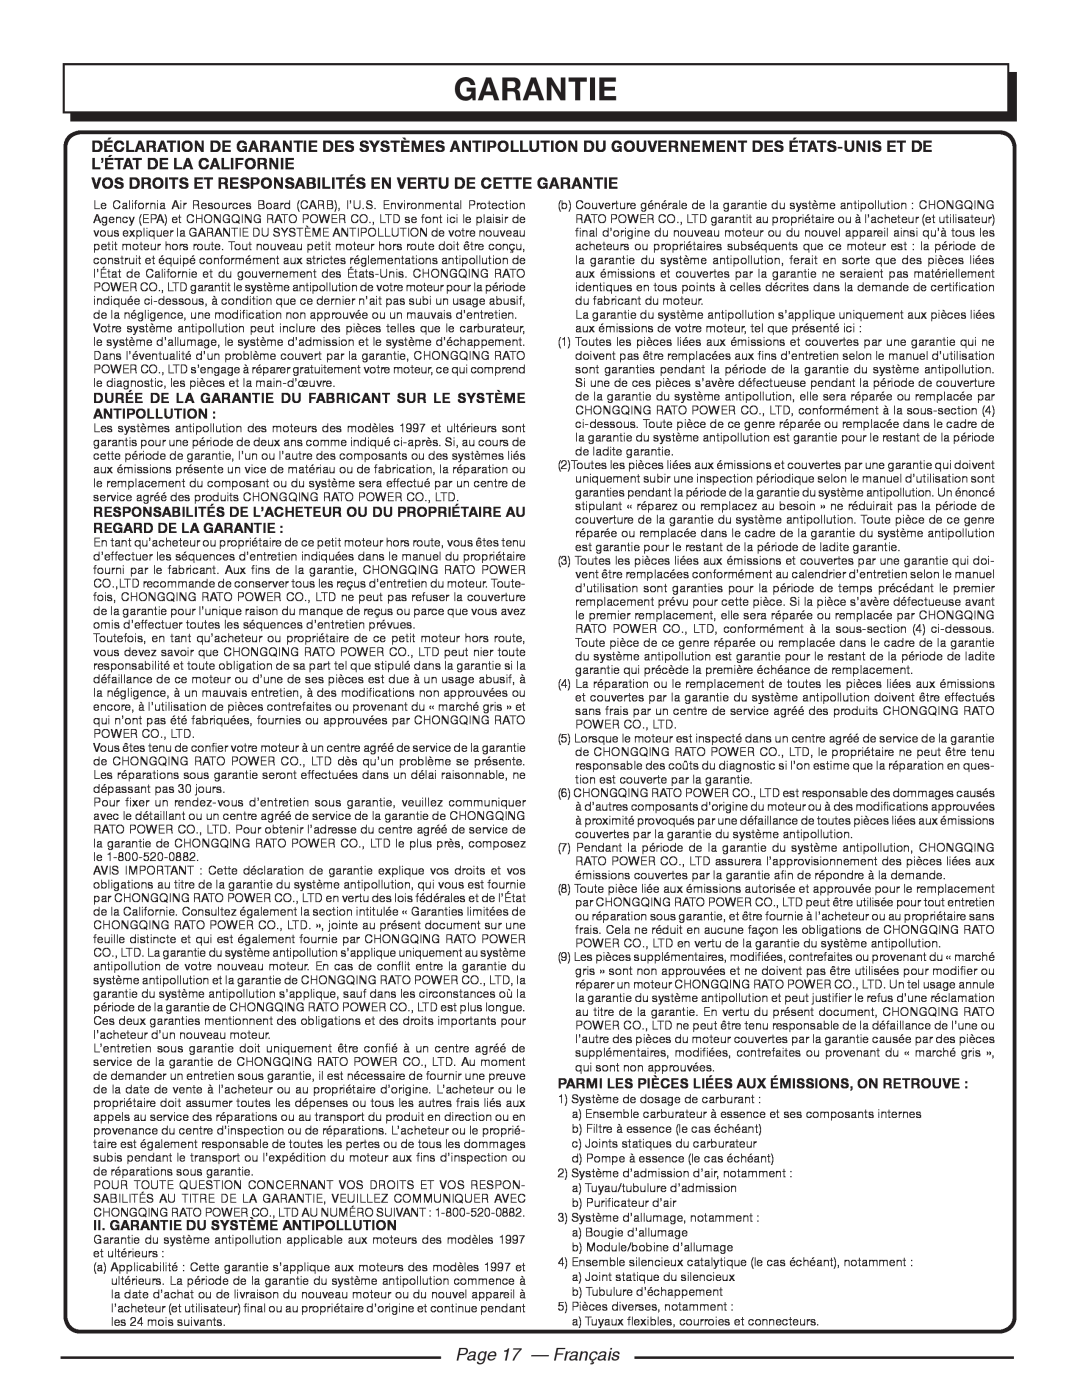 Homelite UT80953, UT80522 Page 17 - Français, Vos Droits Et Responsabilités En Vertu De Cette Garantie 